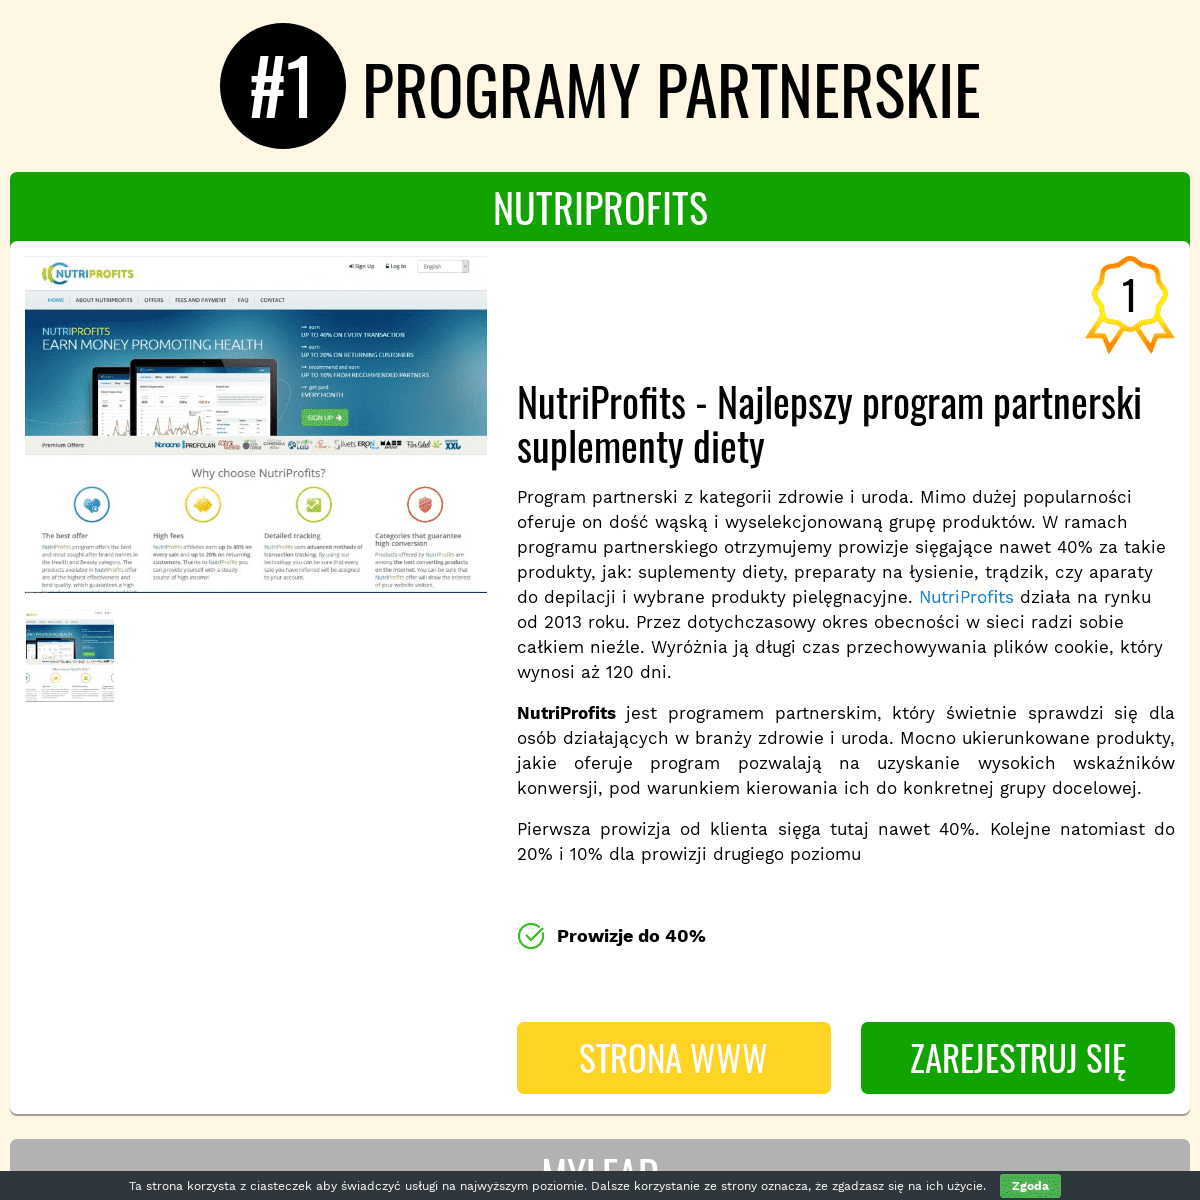 A complete backup of https://programy-partnerskie.info